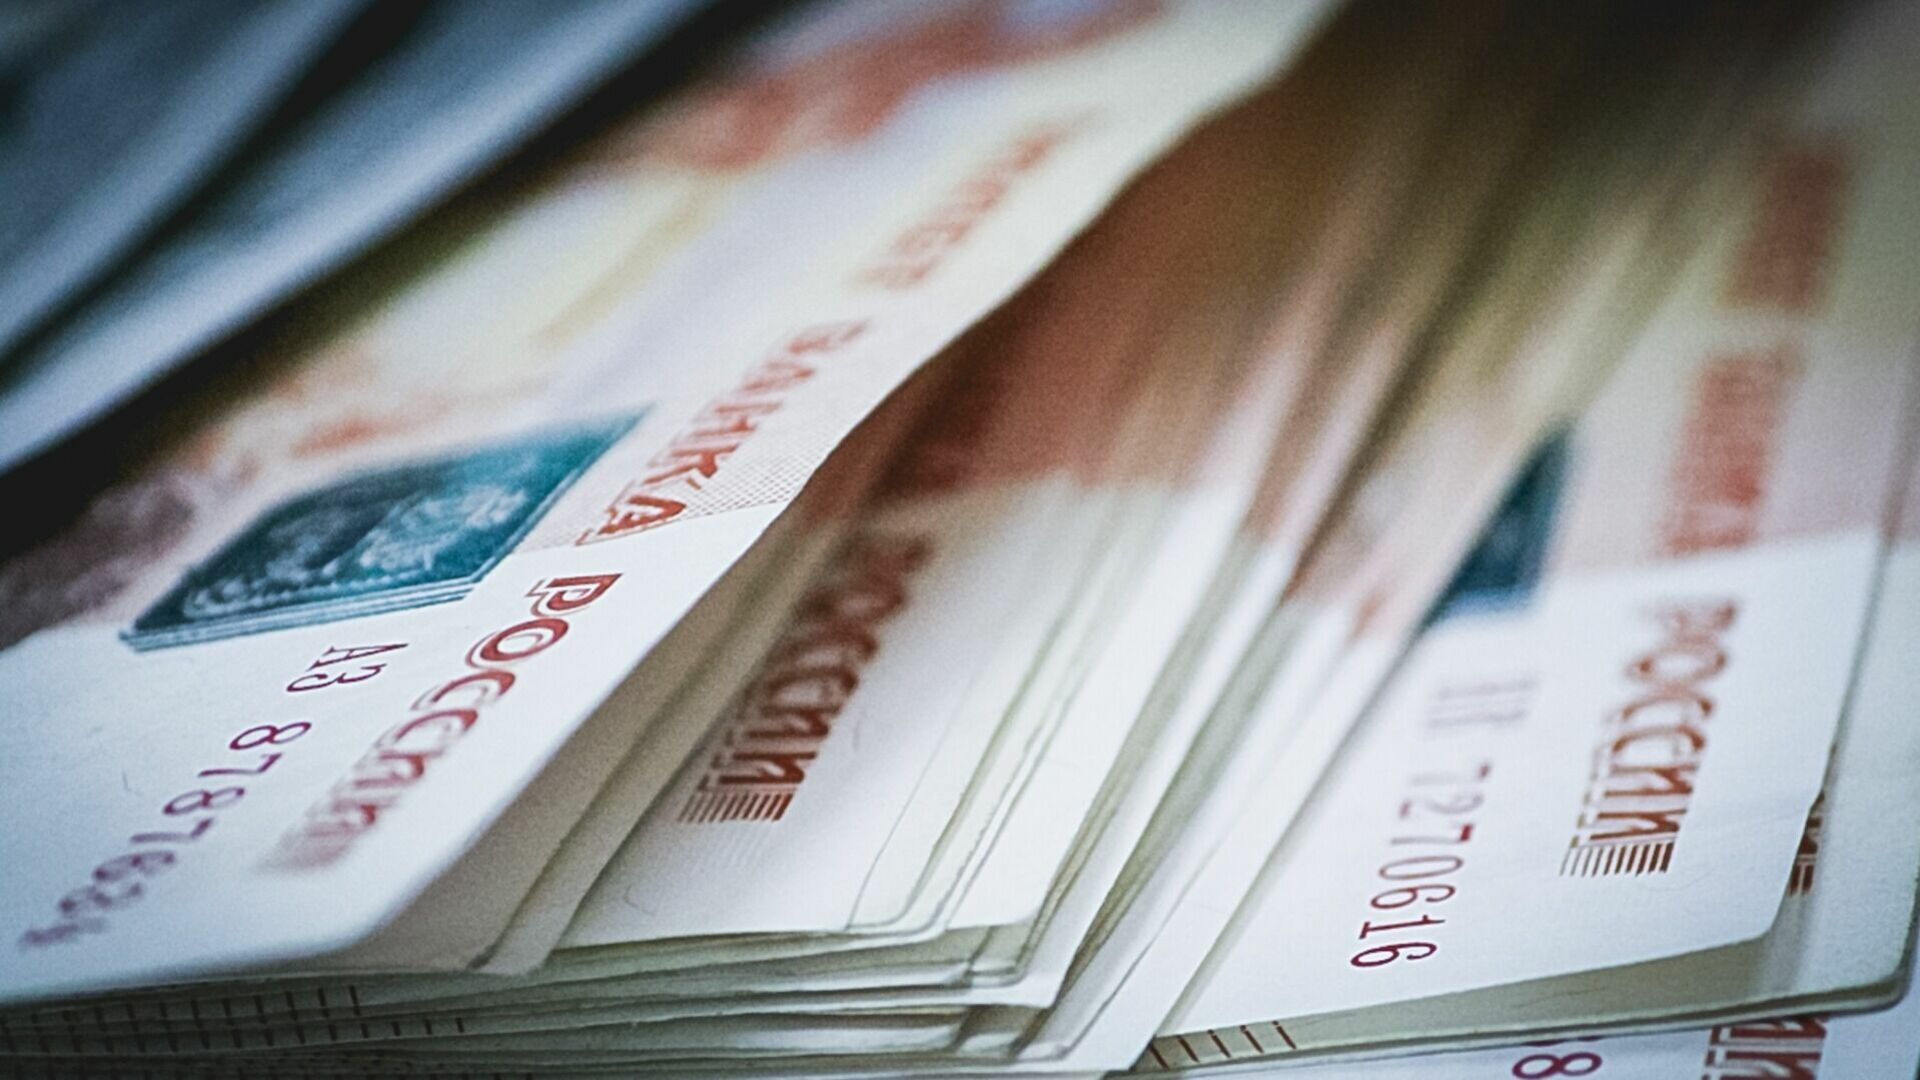 Питание на форуме МФЦ в Уфе обошлось бюджету в 4,8 млн рублей